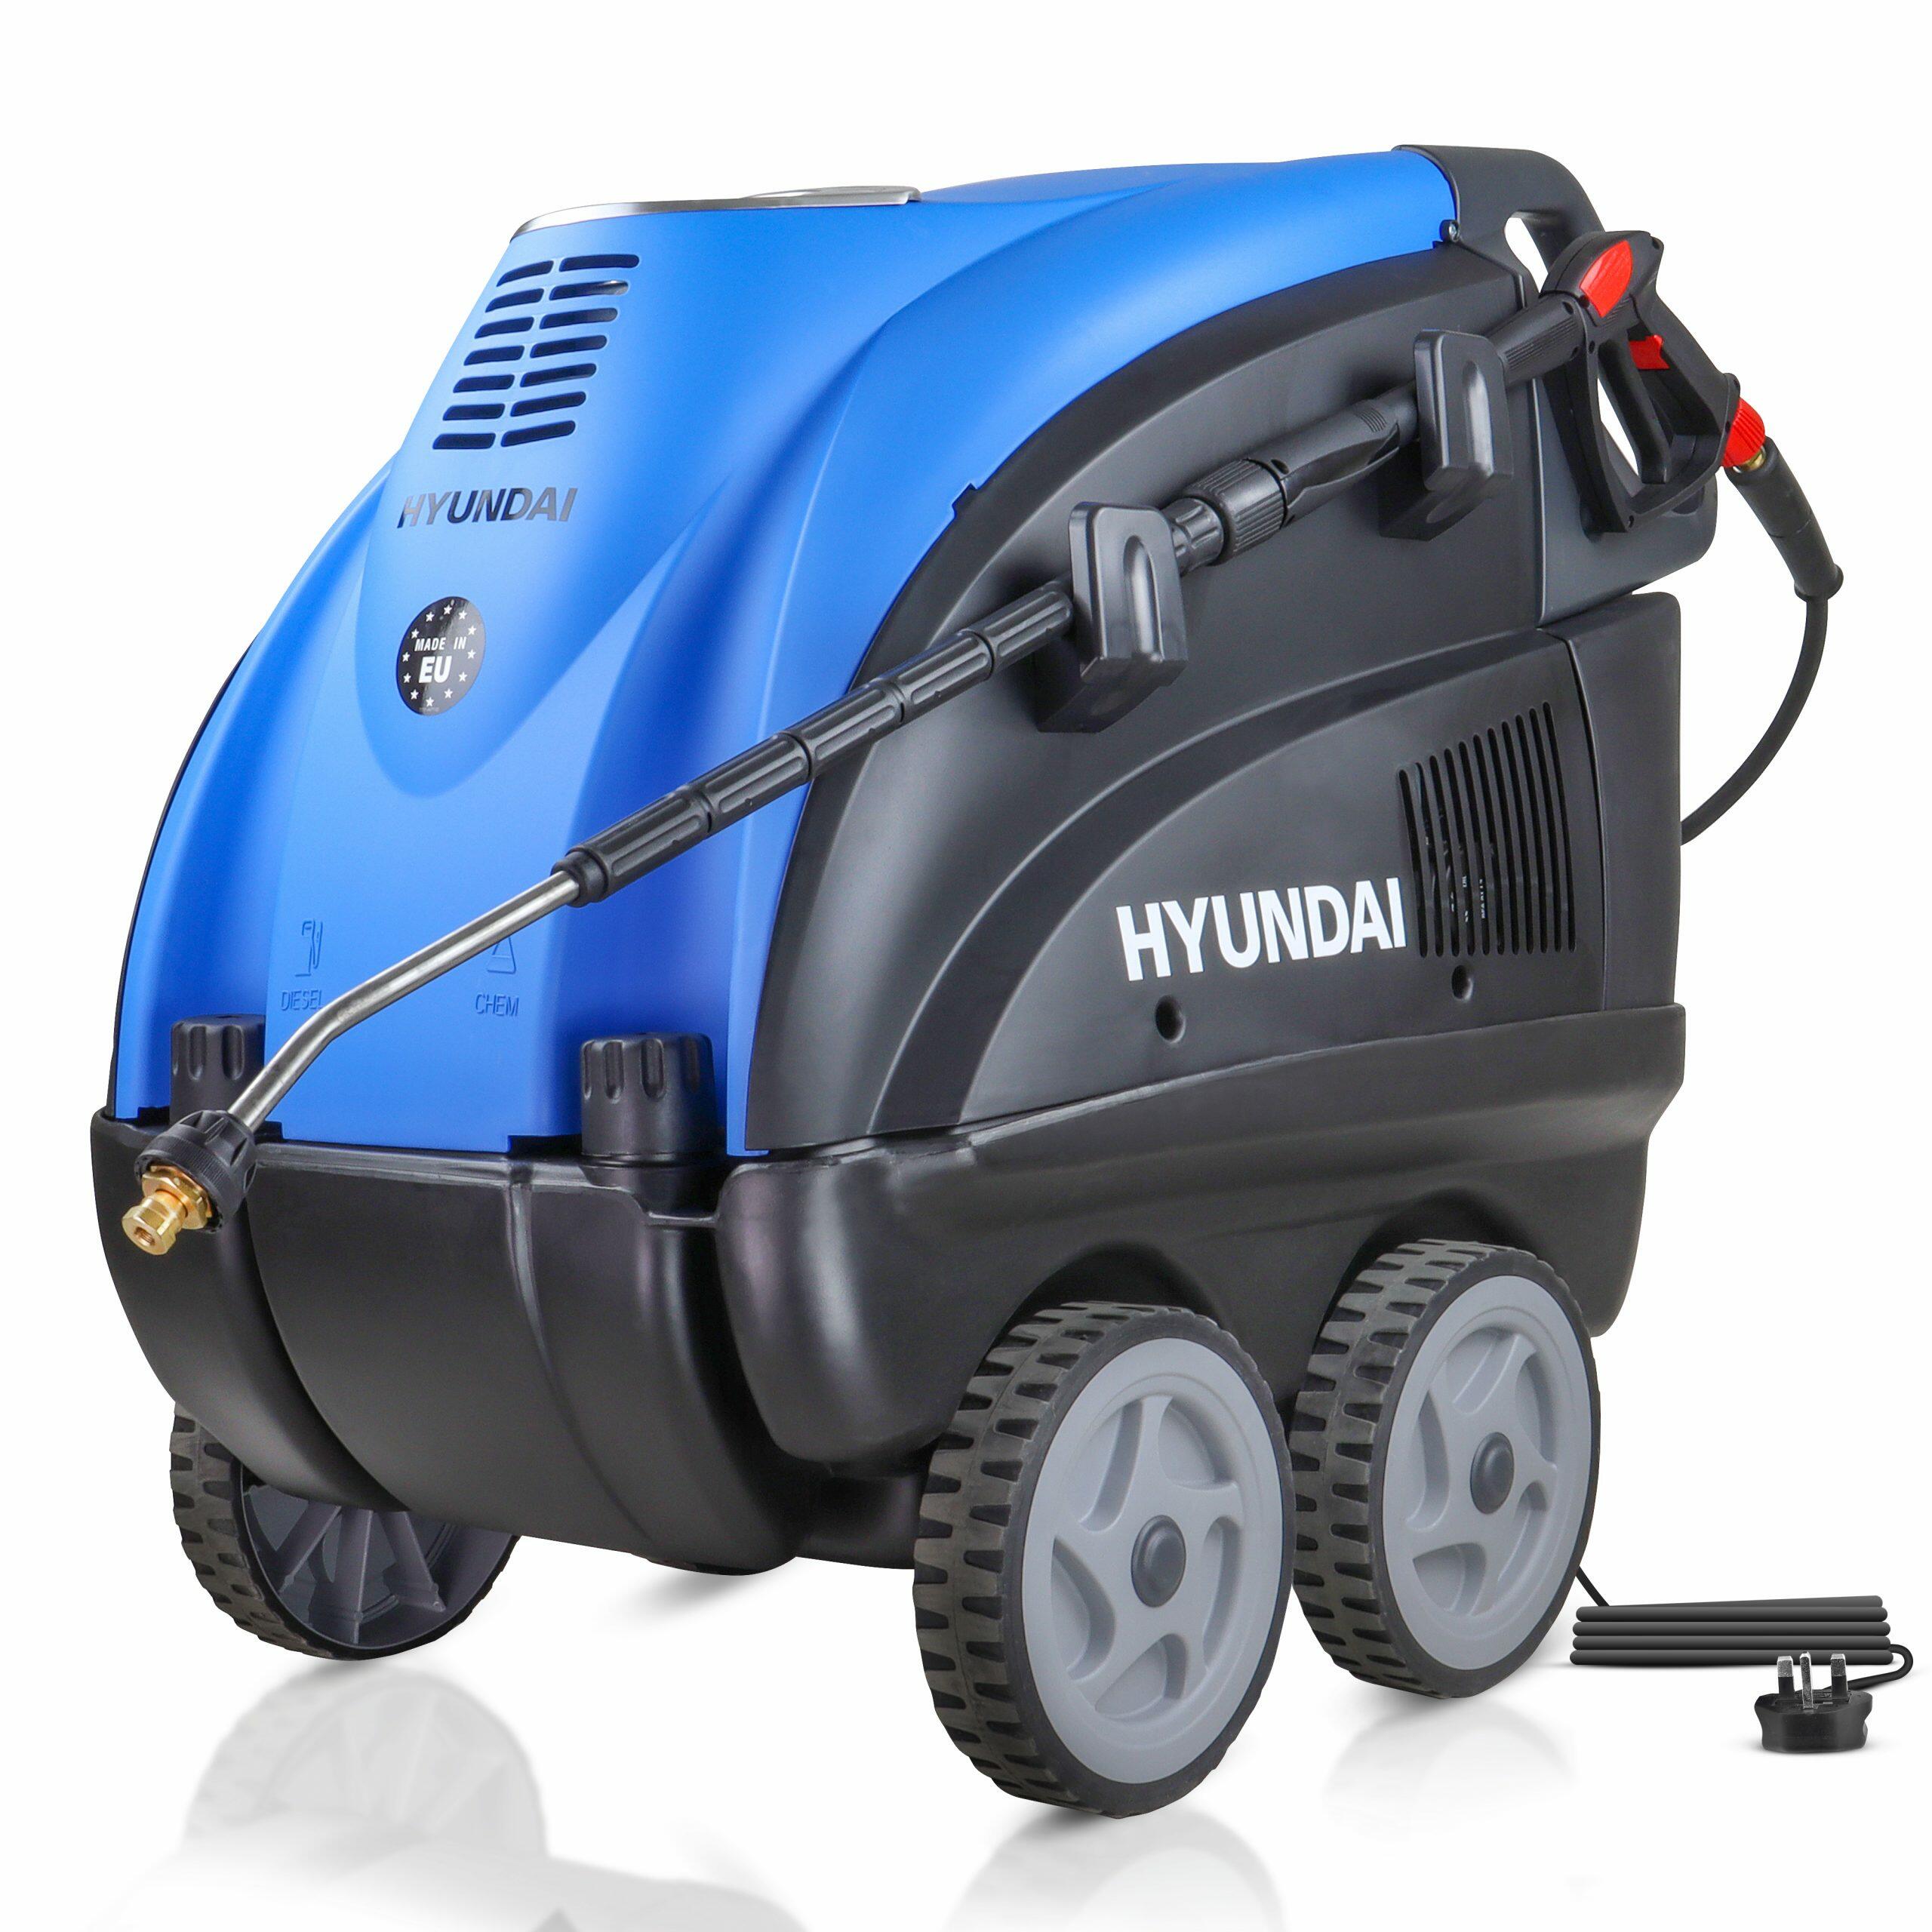 HY150HPW Hyundai wheeled pressure washer